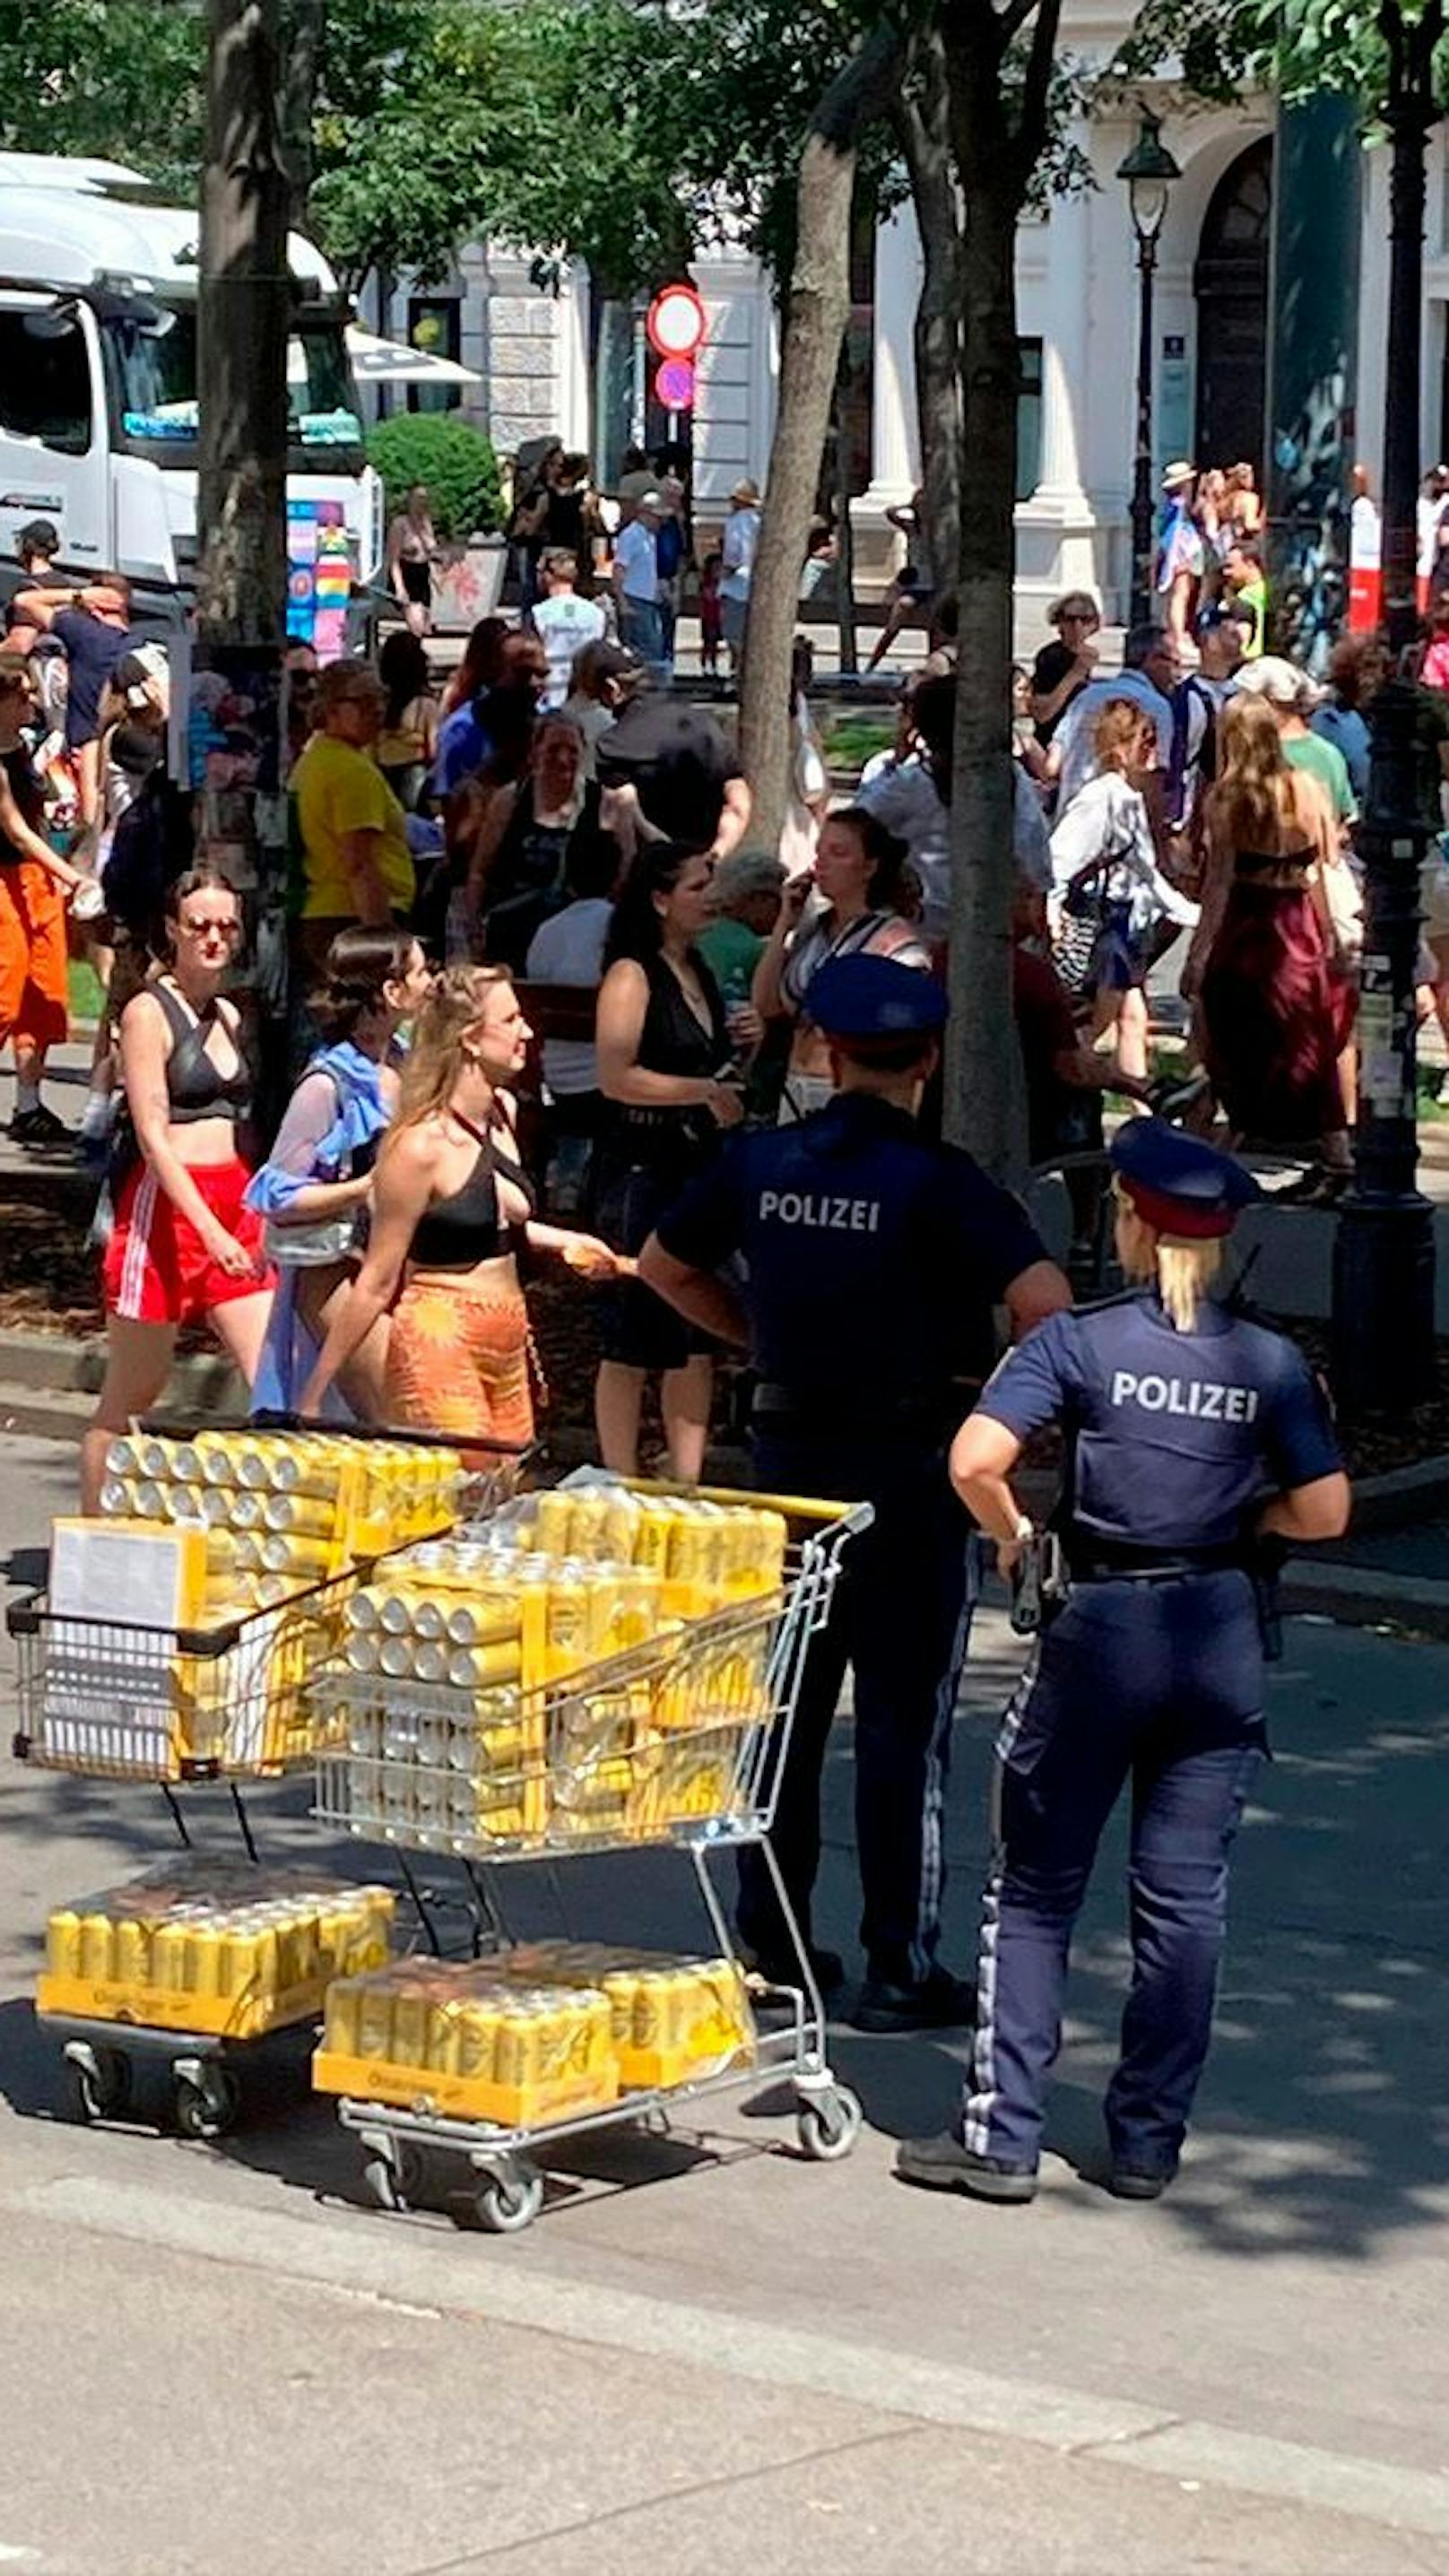 Bier-Razzia! Polizei greift bei Regenbogen-Parade durch